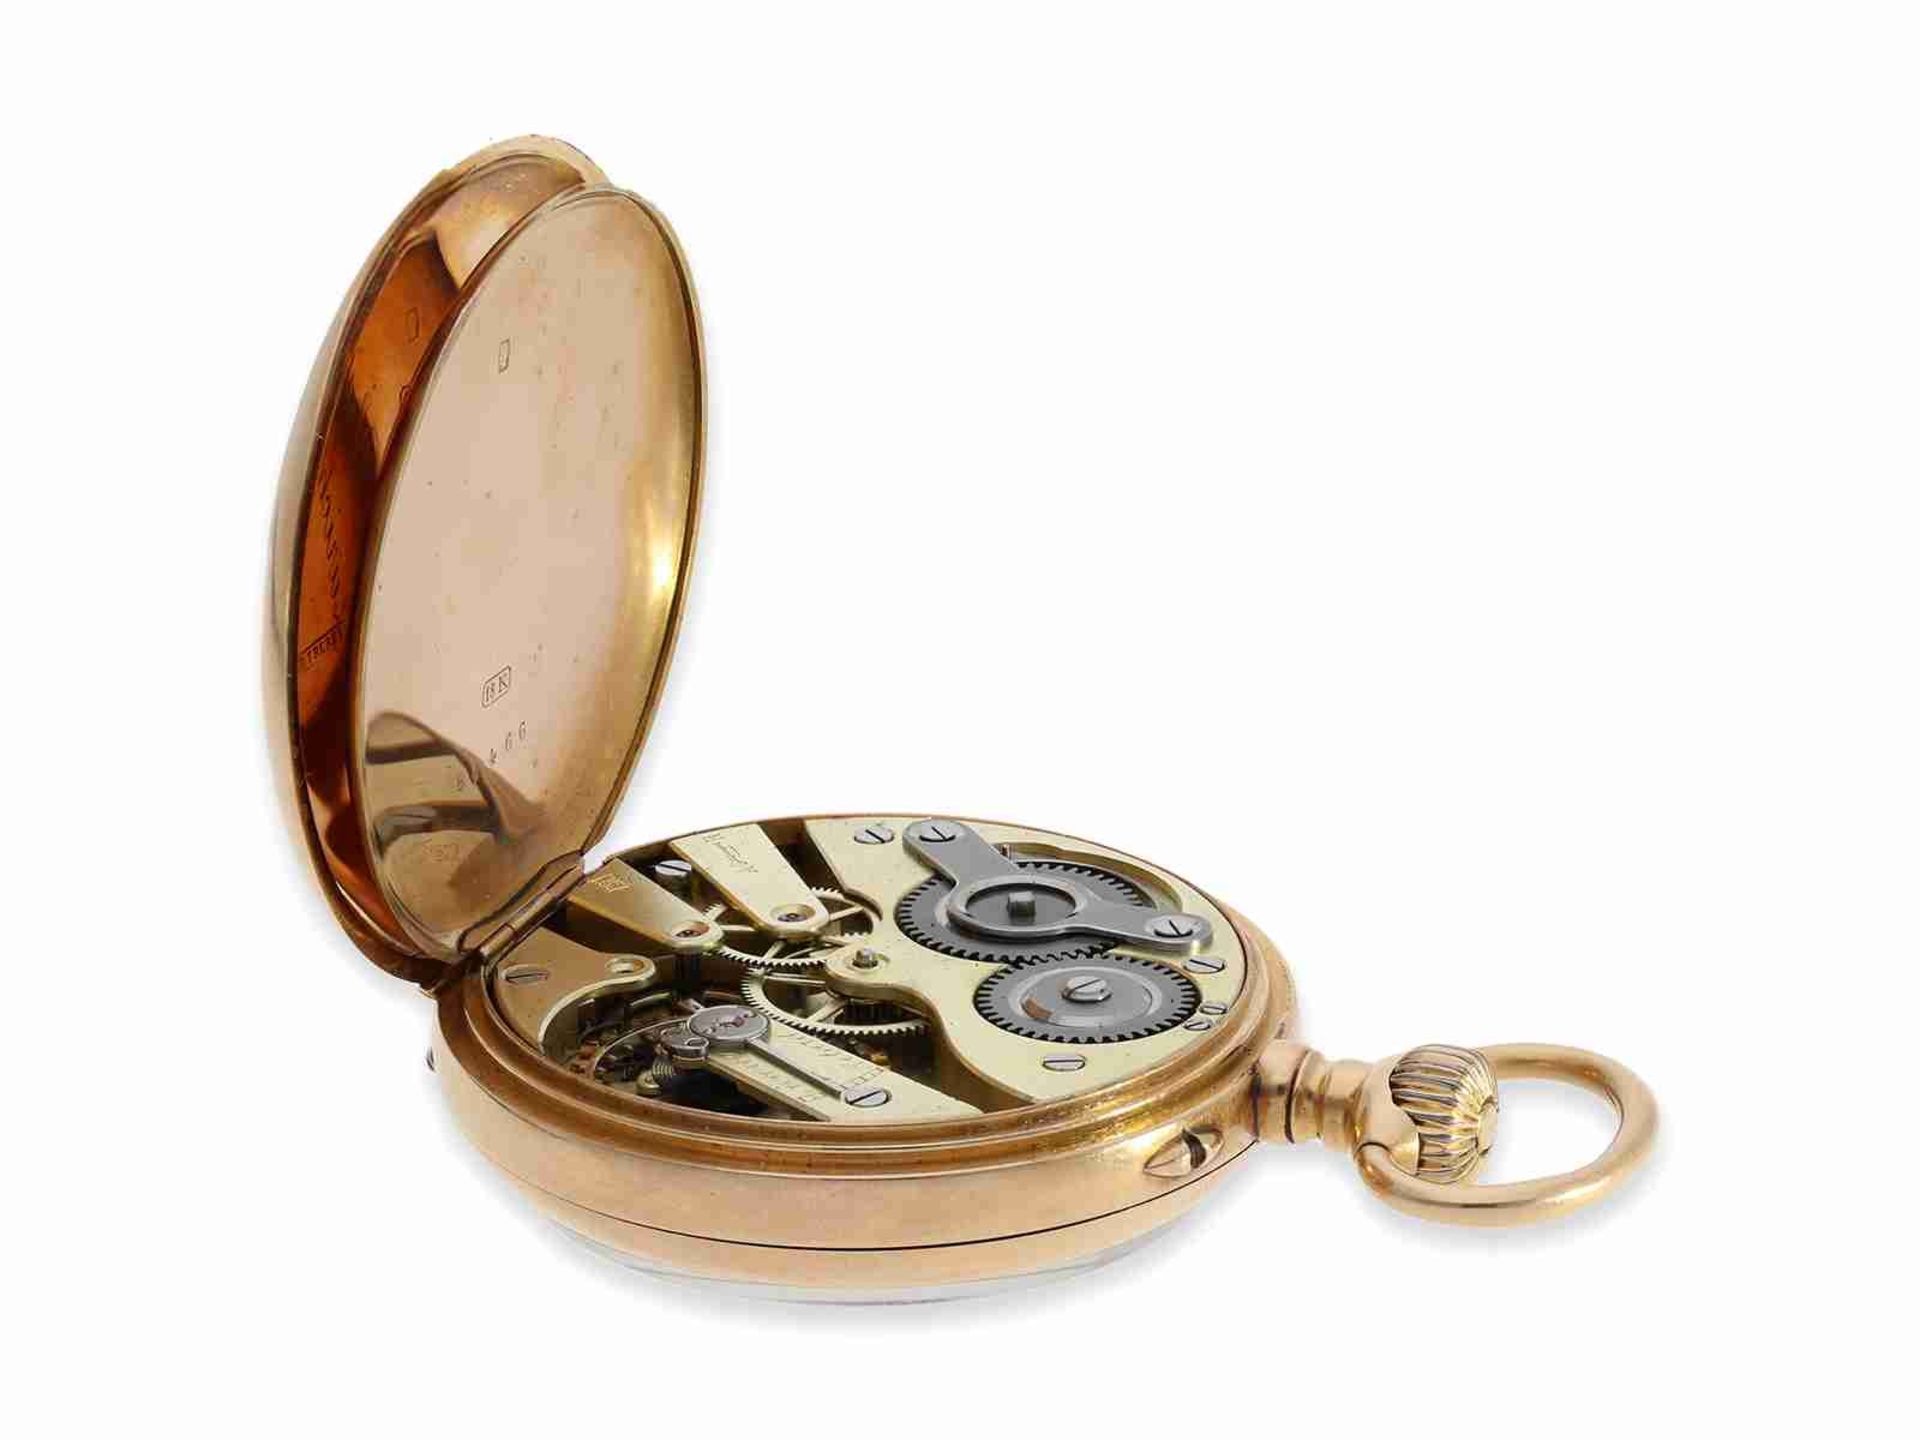 Taschenuhr: hochfeines rotgoldenes Ankerchronometer von Mermod Freres, verkauft durch Türler in Züri - Bild 4 aus 7